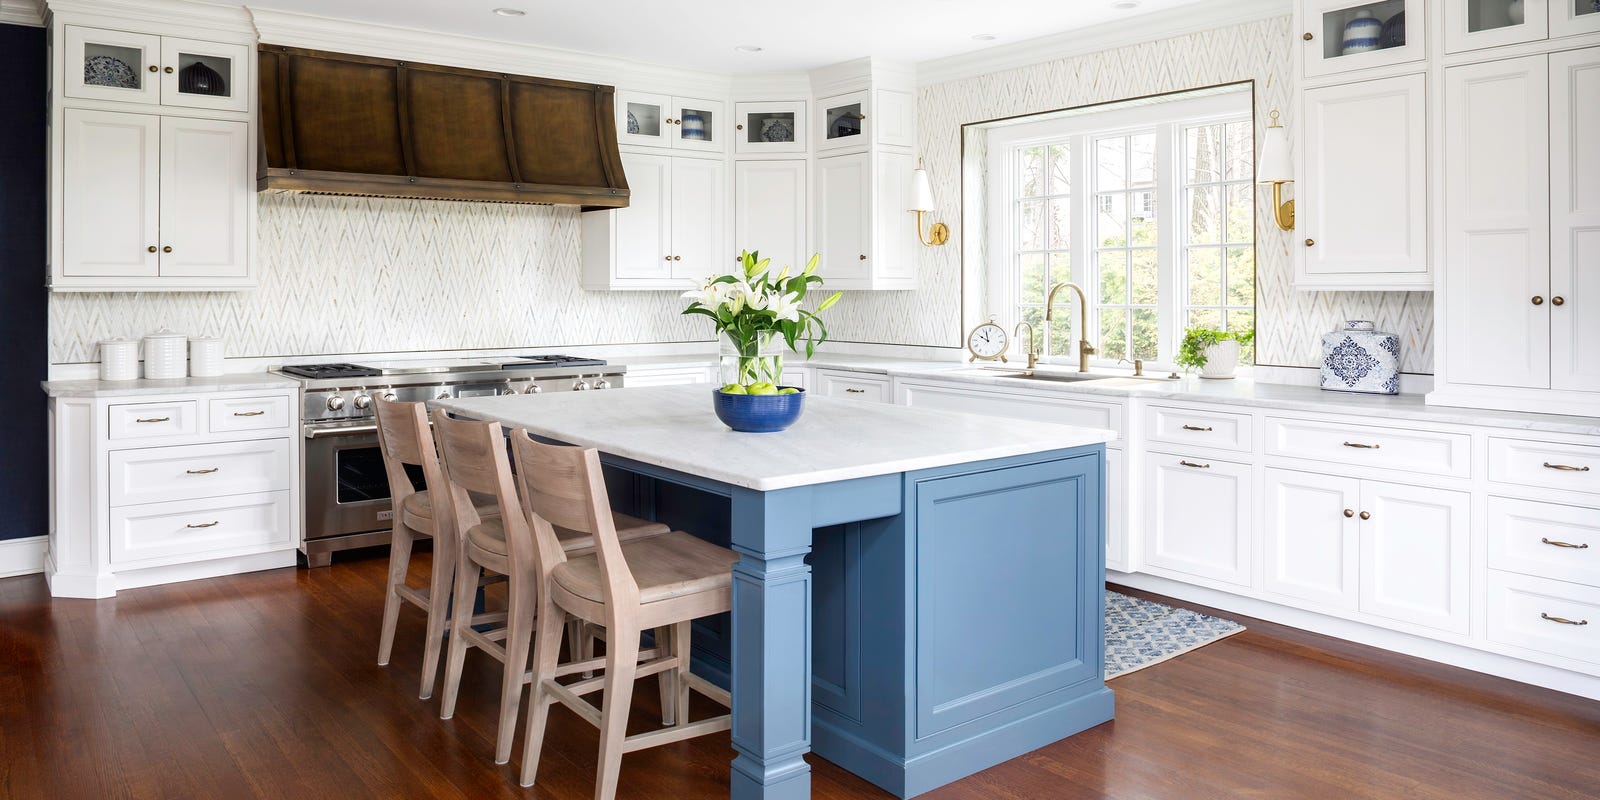 6 Bergen Homes Showcase The Always Popular White Kitchen Trend